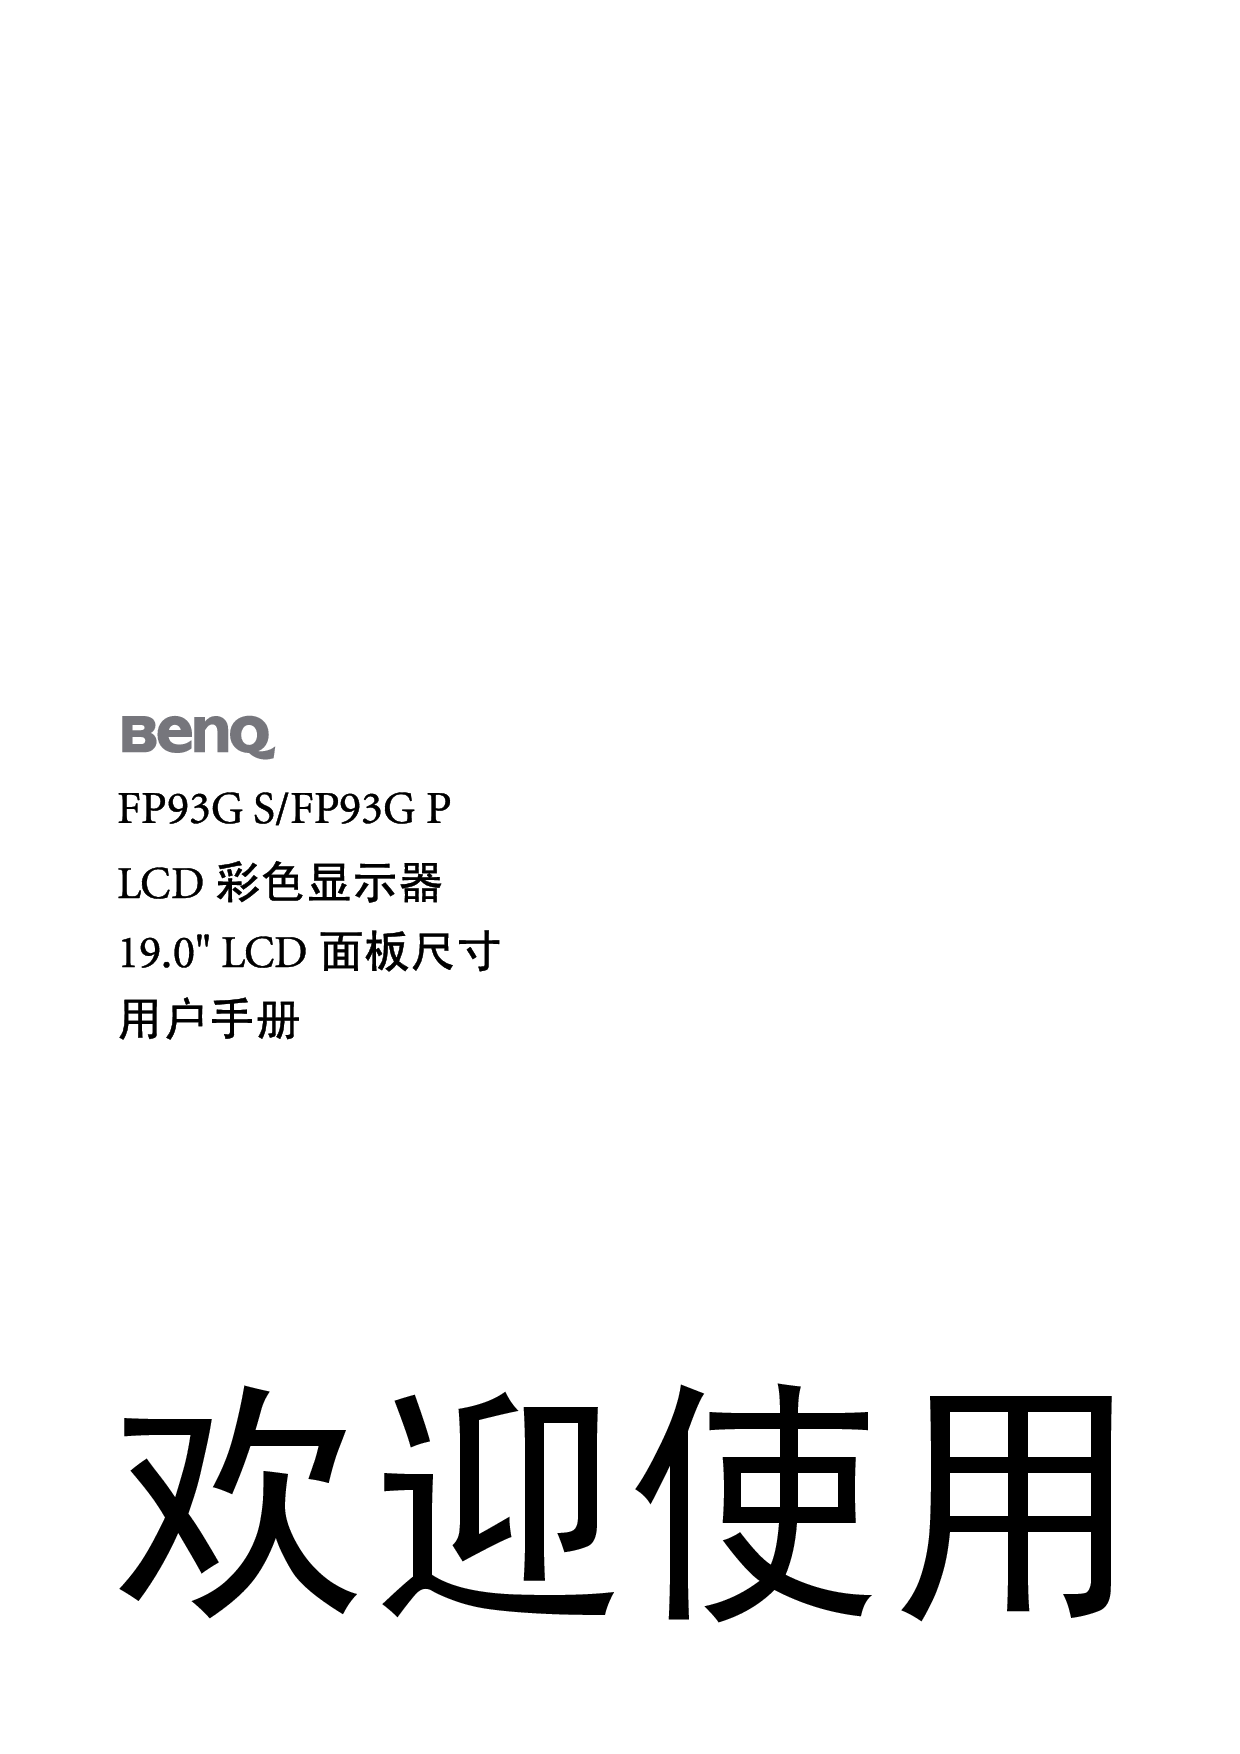 明基 Benq FP93G P 使用手册 封面